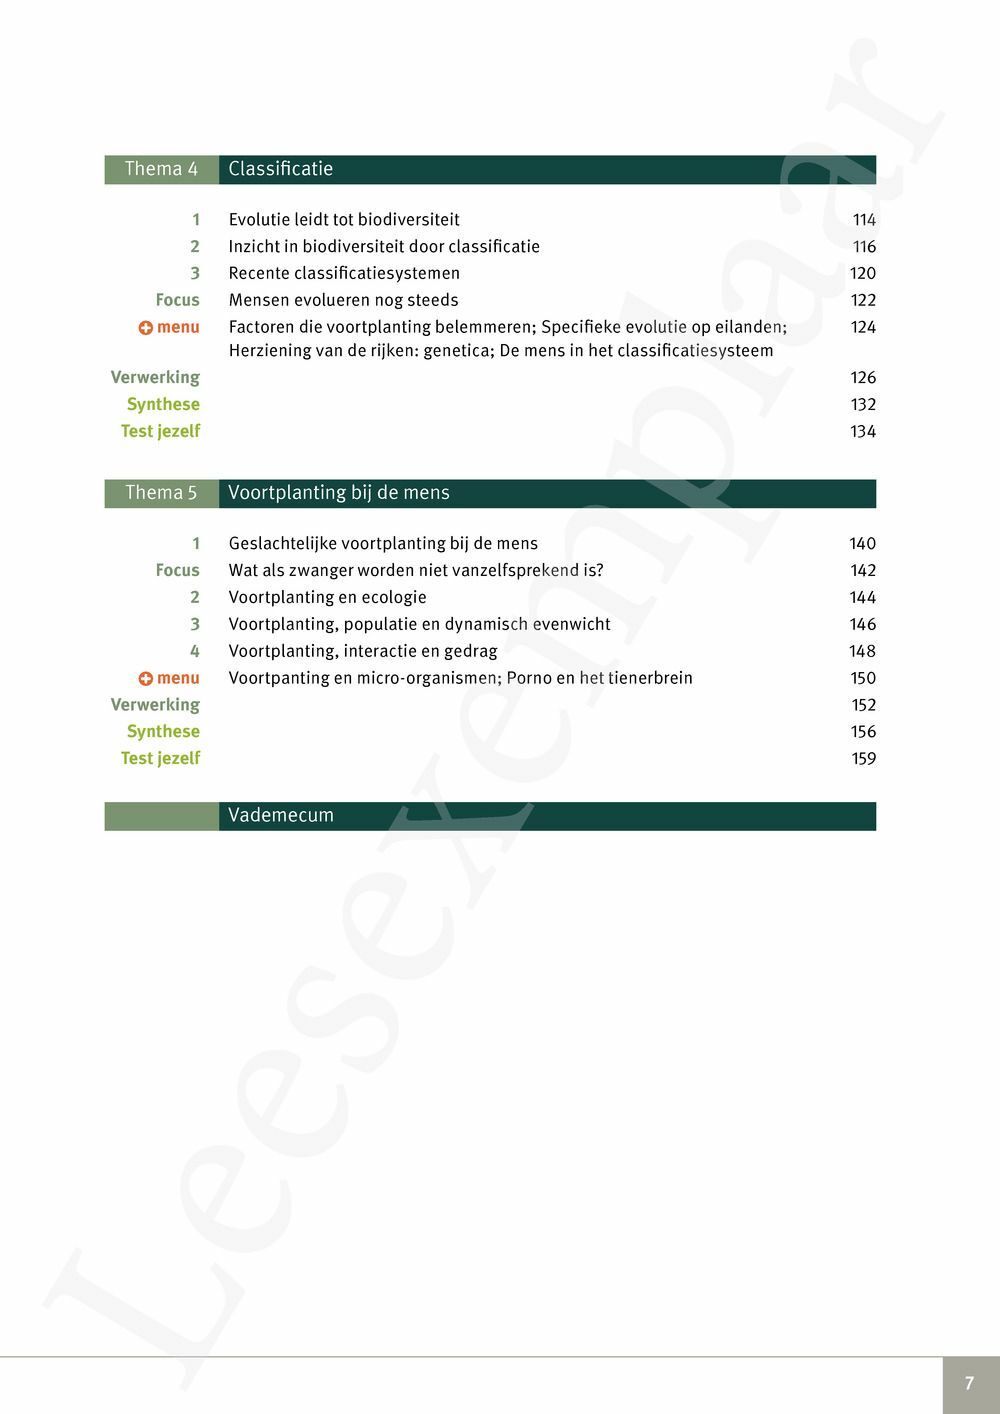 Preview: Focus Biologie 4.1 Leerwerkboek (incl. Pelckmans Portaal)